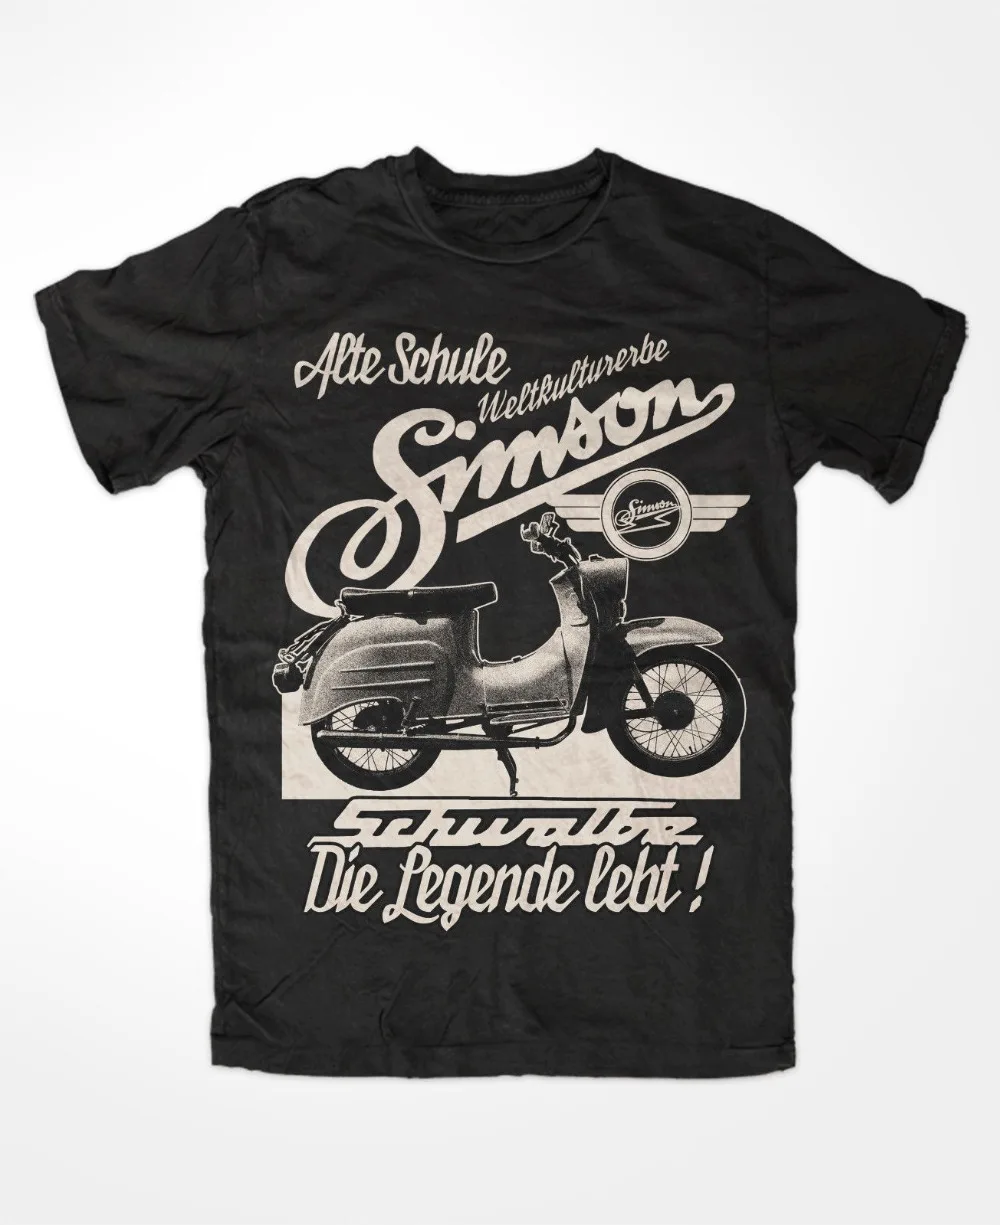 

Simson Schwalbe Die Legende T-Shirt Kult S50 S51 Ddr Trabant Ostkult Weltkulture 2019 Summer Style Fashion Men Short T Shirt